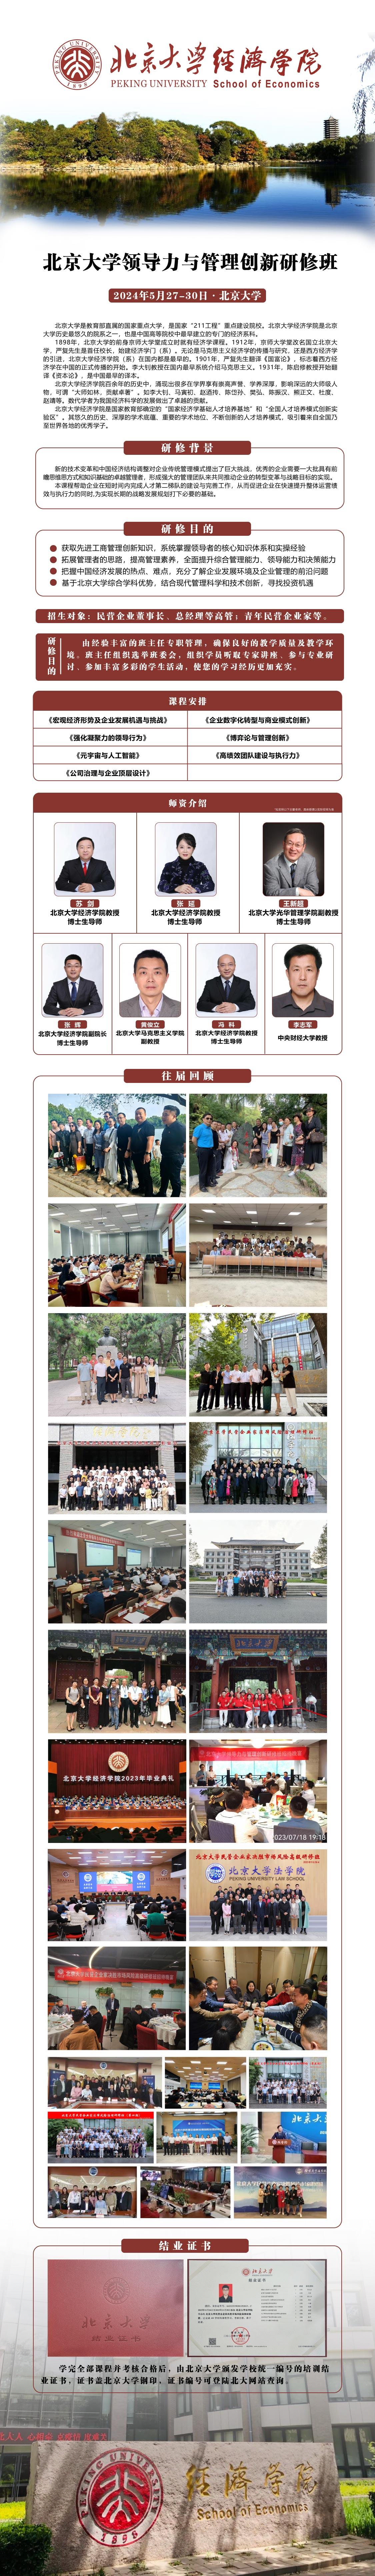   《北京大学领导力与管理创新研修班》5月27-30日在北京大学开办